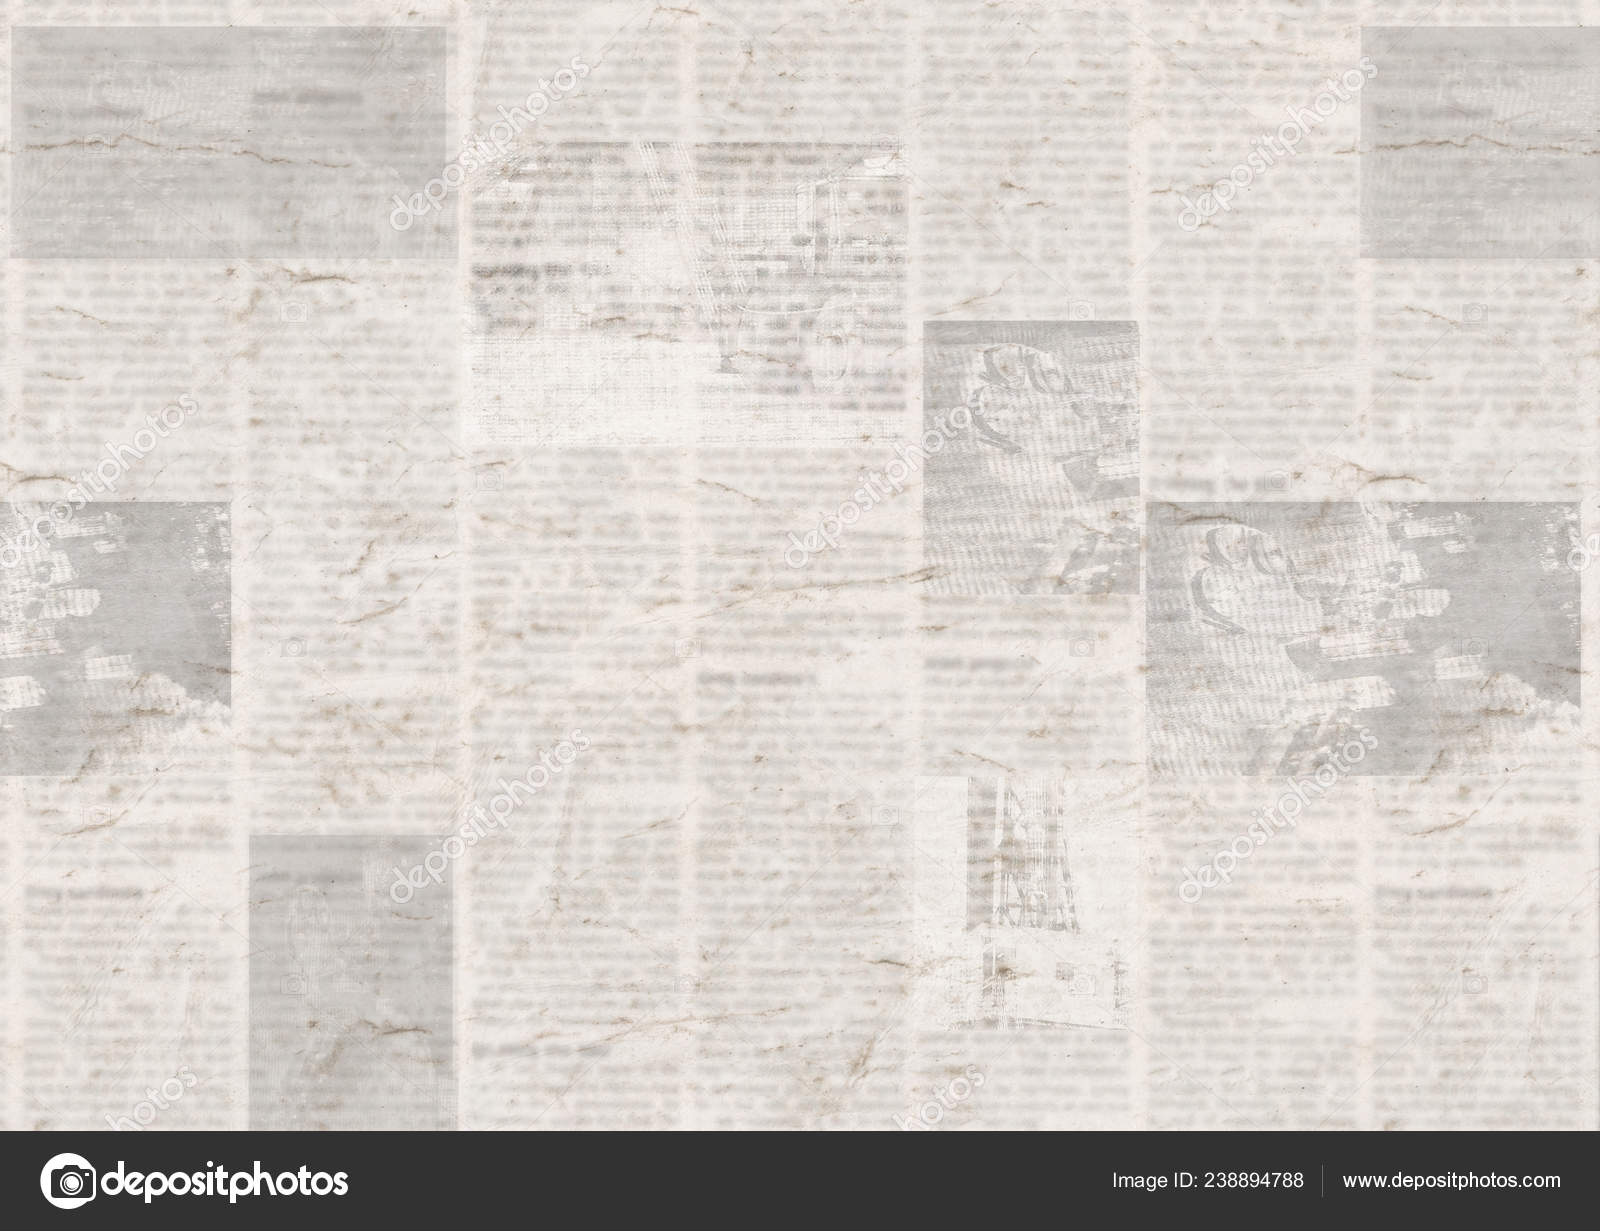 Newspaper paper grunge newsprint patchwork seamless pattern